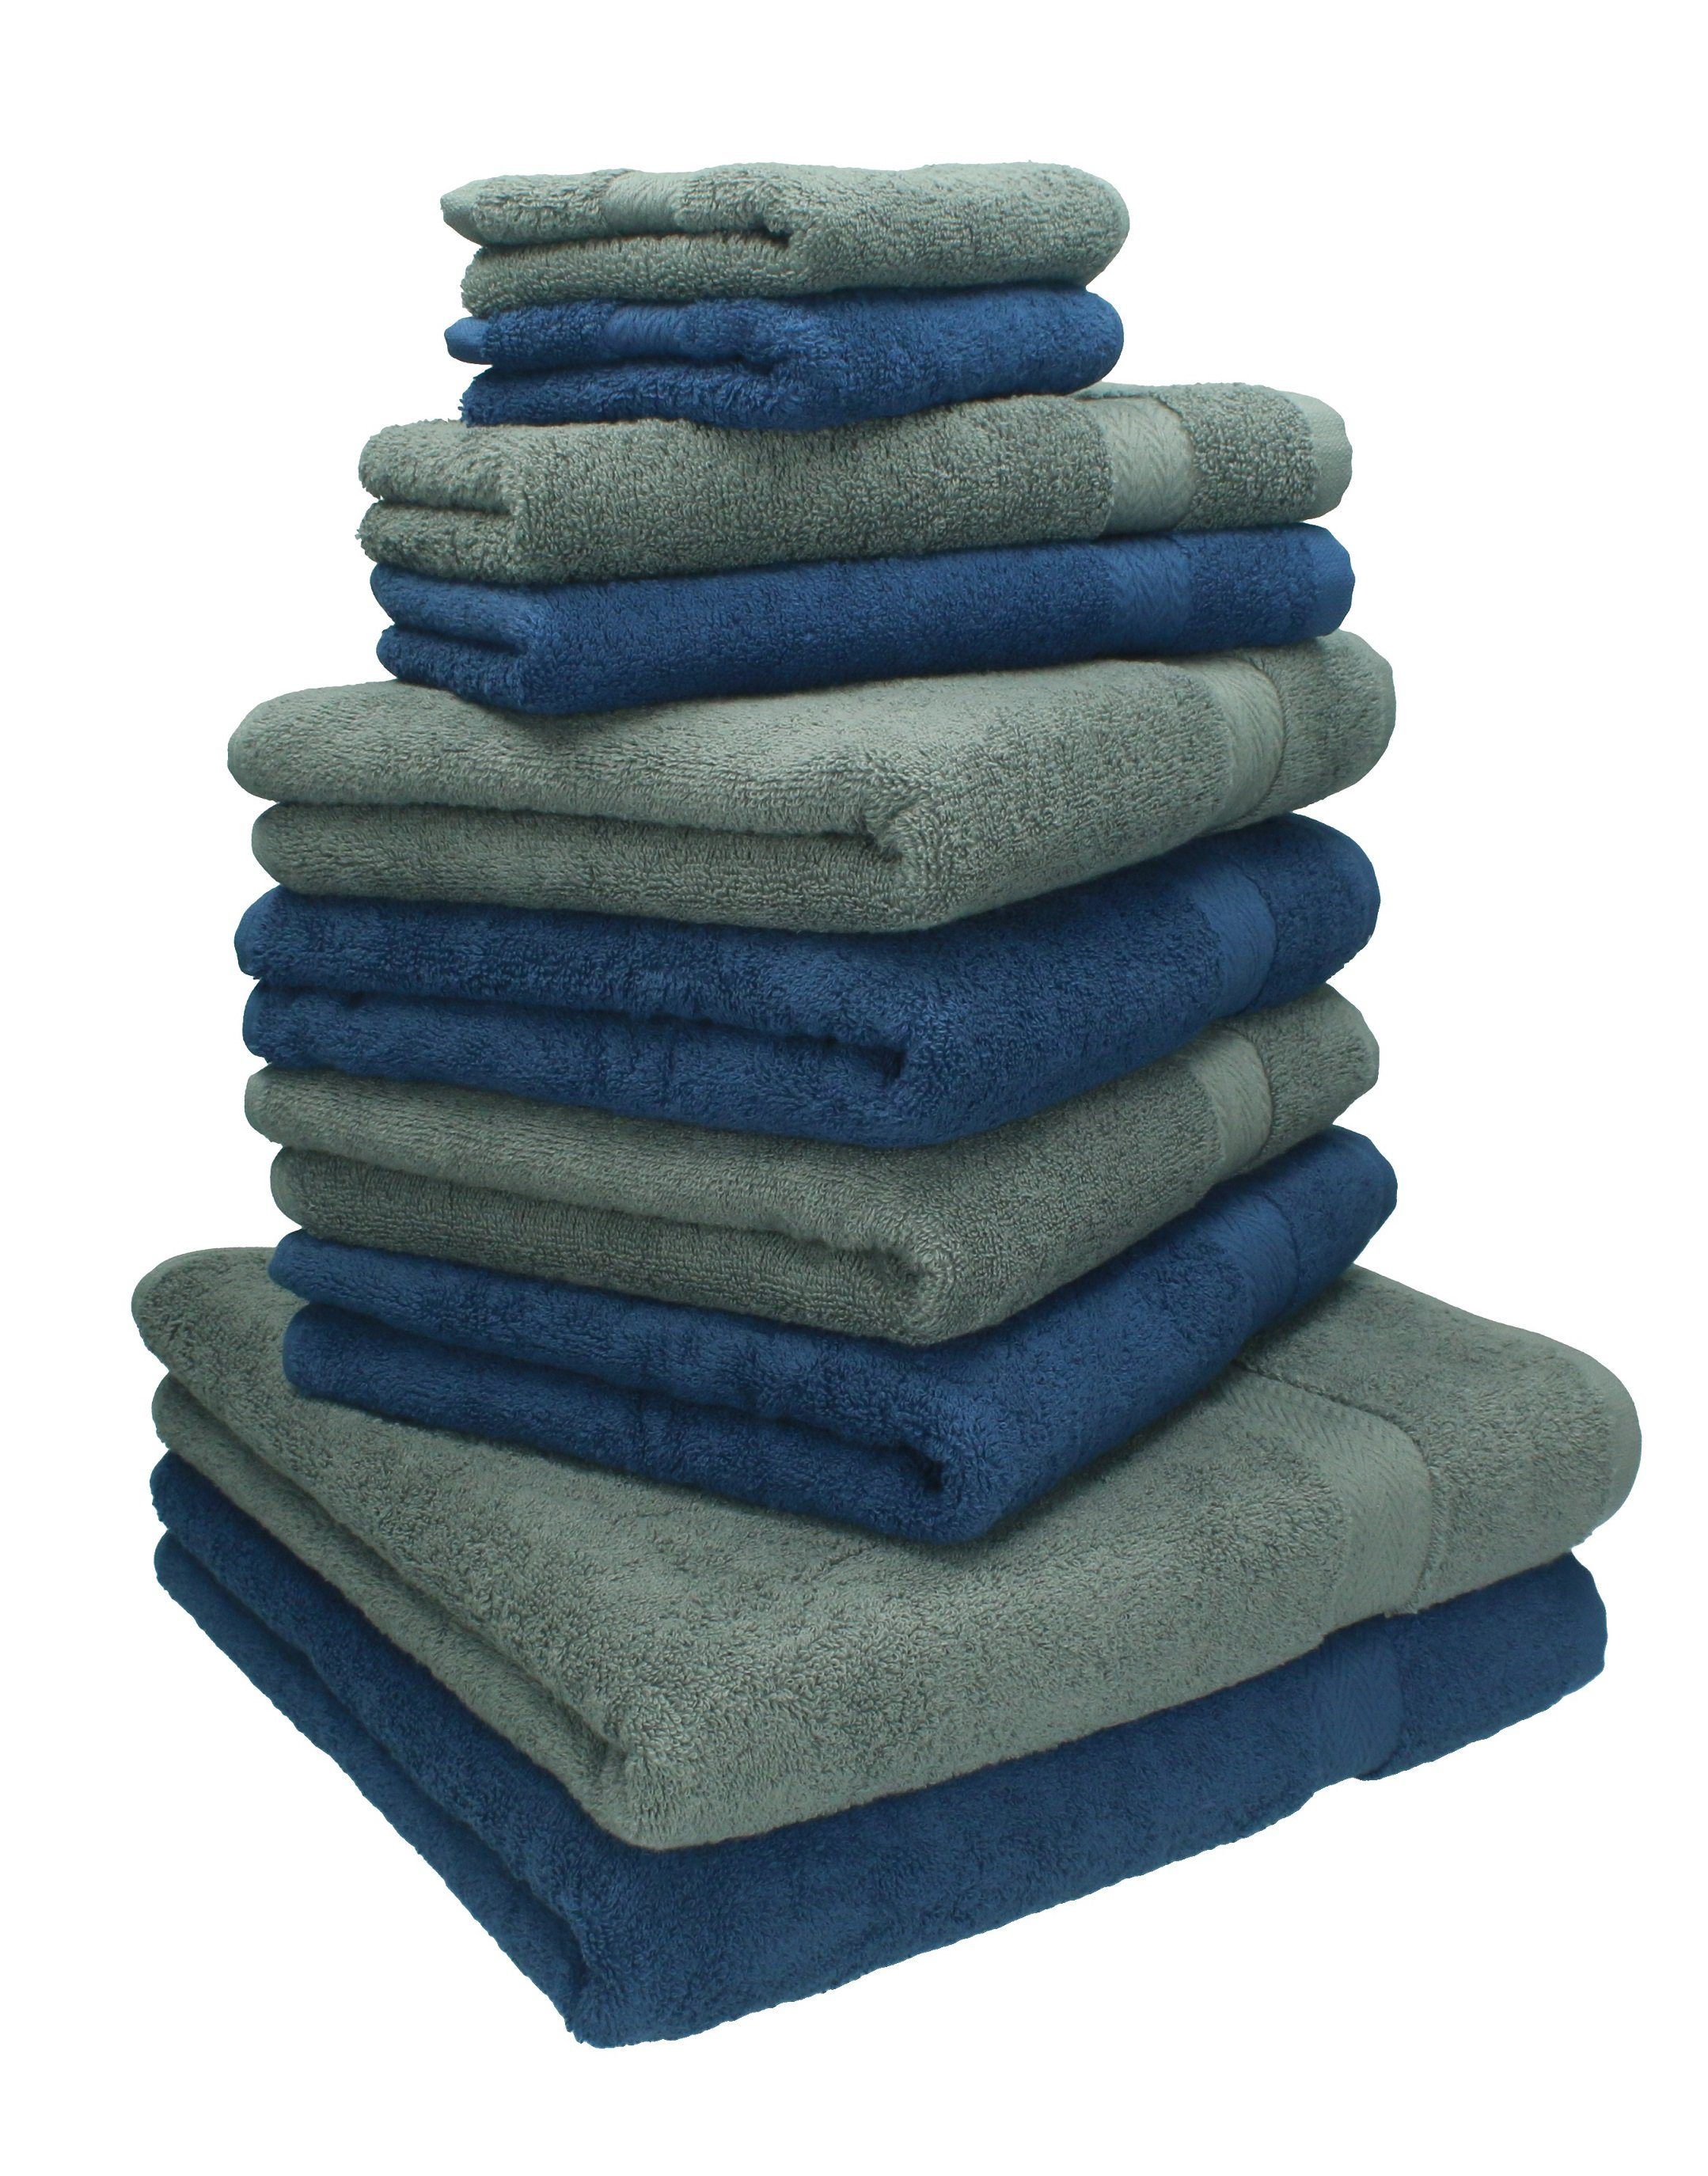 Betz Handtuch Set 10-TLG. Handtuch-Set Classic Farbe dunkelblau und anthrazitgrau, 100% Baumwolle